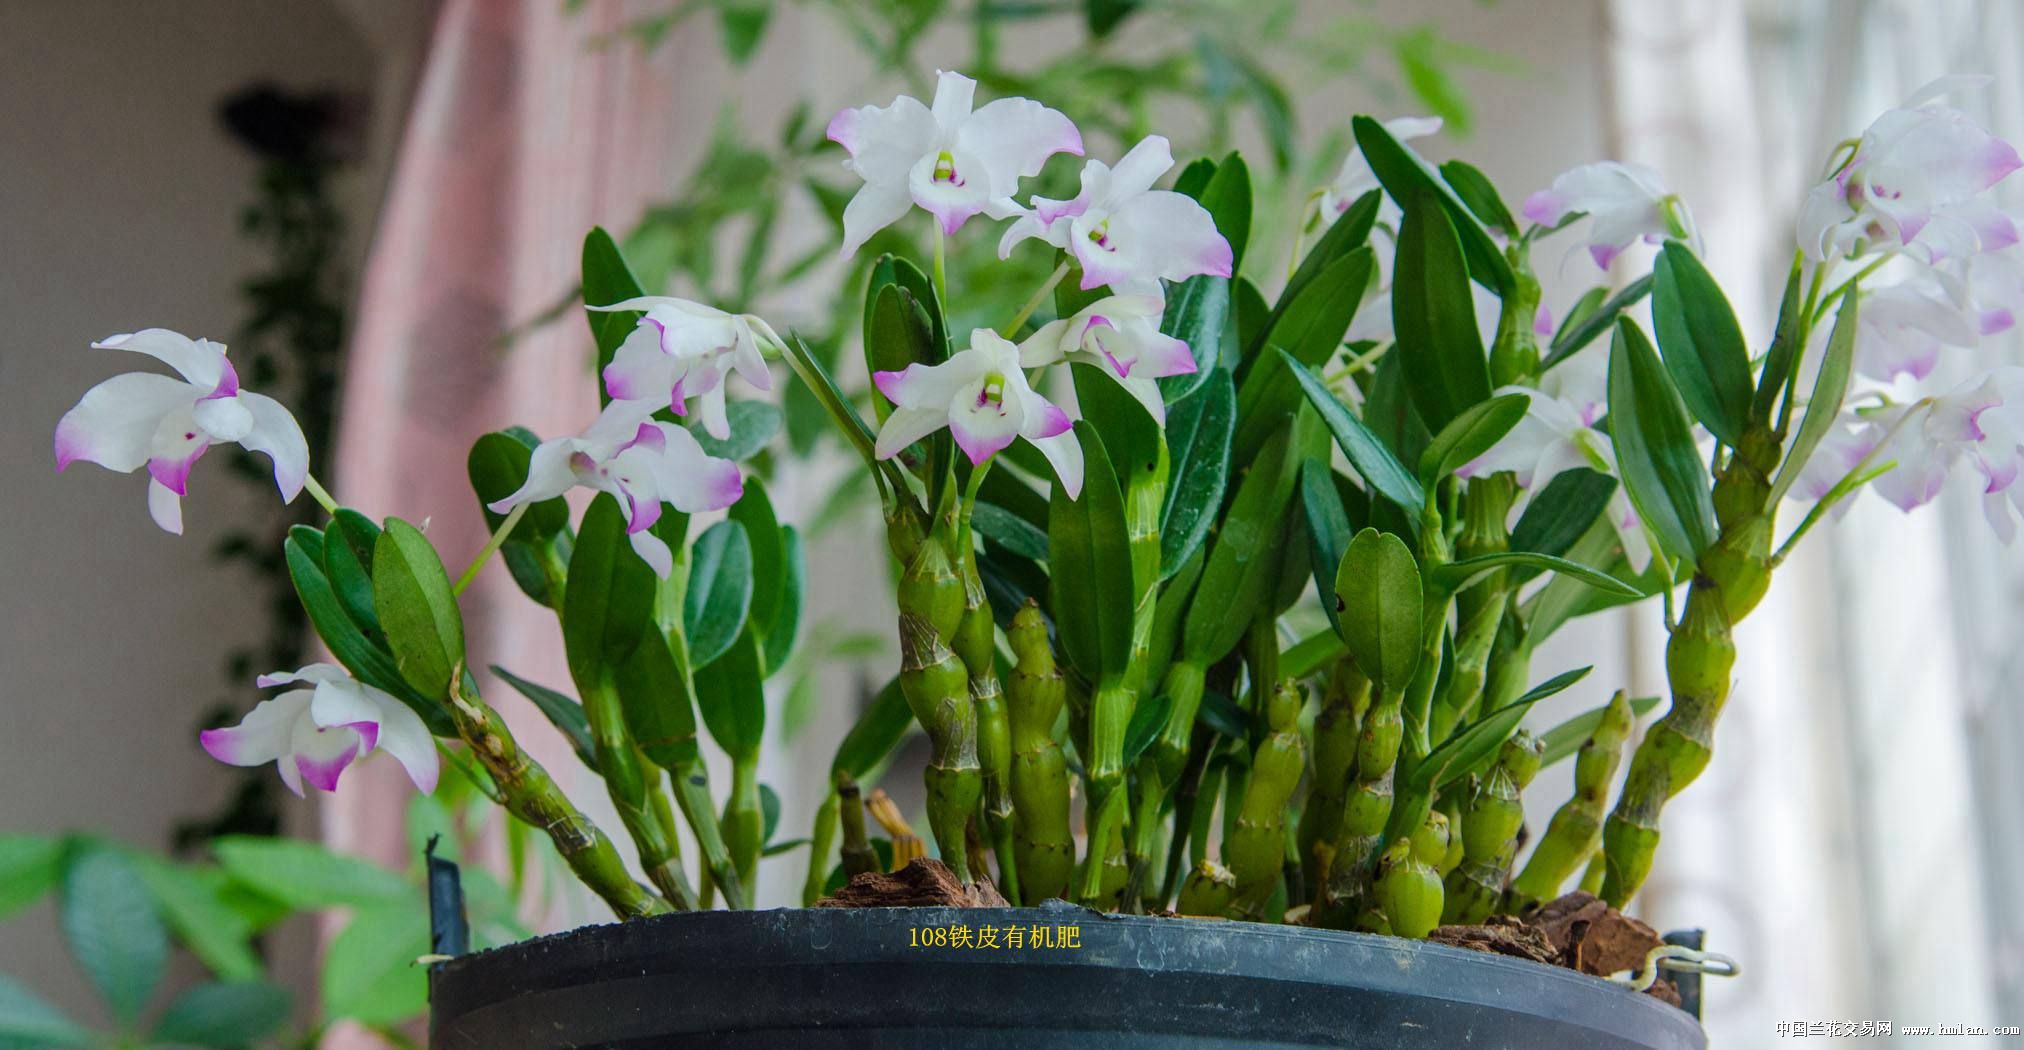 美丽的金钗石斛花和丑陋的盆-石斛兰-中国兰花交易网社区